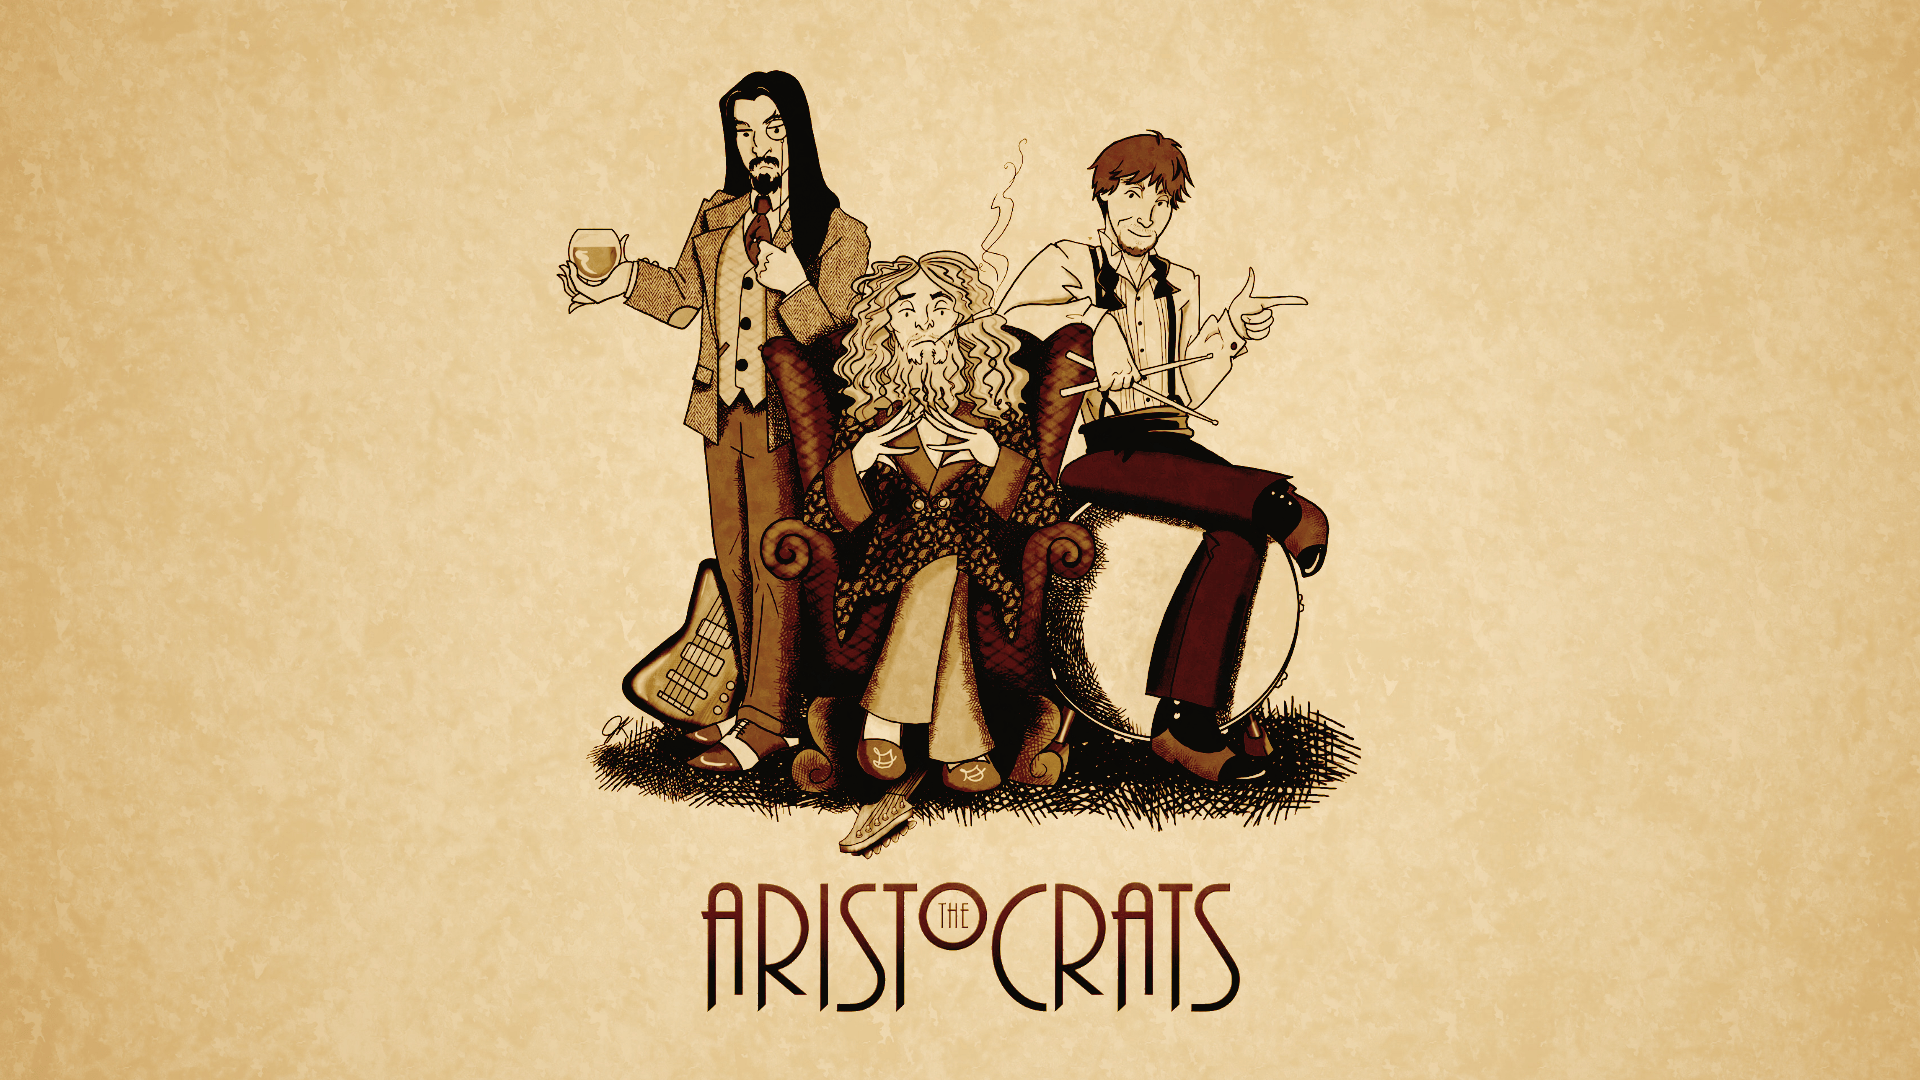 Download The Aristocrats Wallpaper 1920x1080